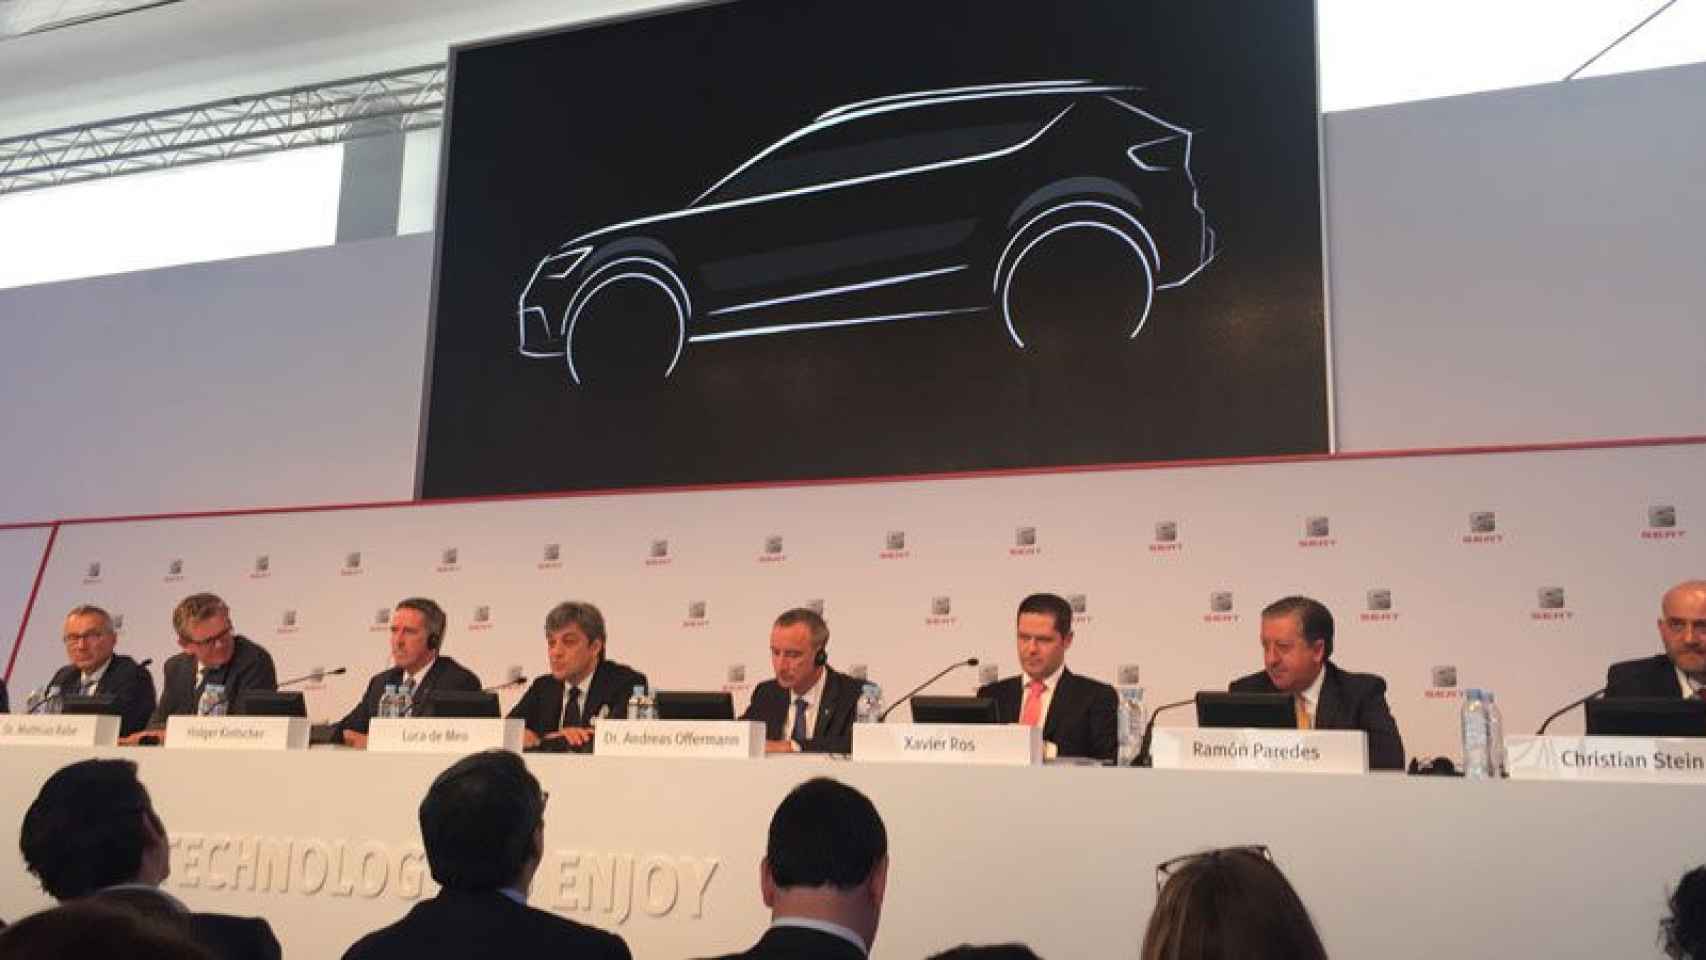 Luca de Meo (centro), presidente de Seat, y el resto del consejo de administración presentan el concepto del nuevo SUV 'crossroad' de la compañía.